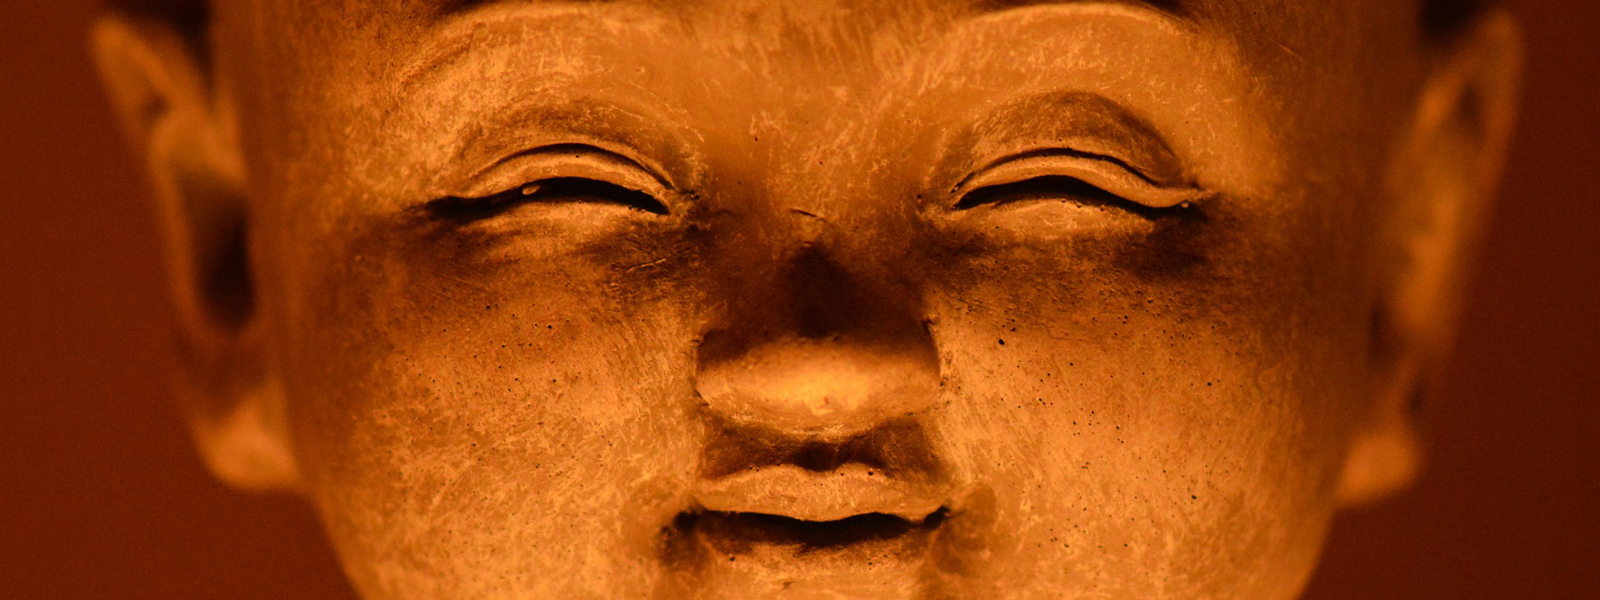 Im Sex die Buddha-­Natur finden 